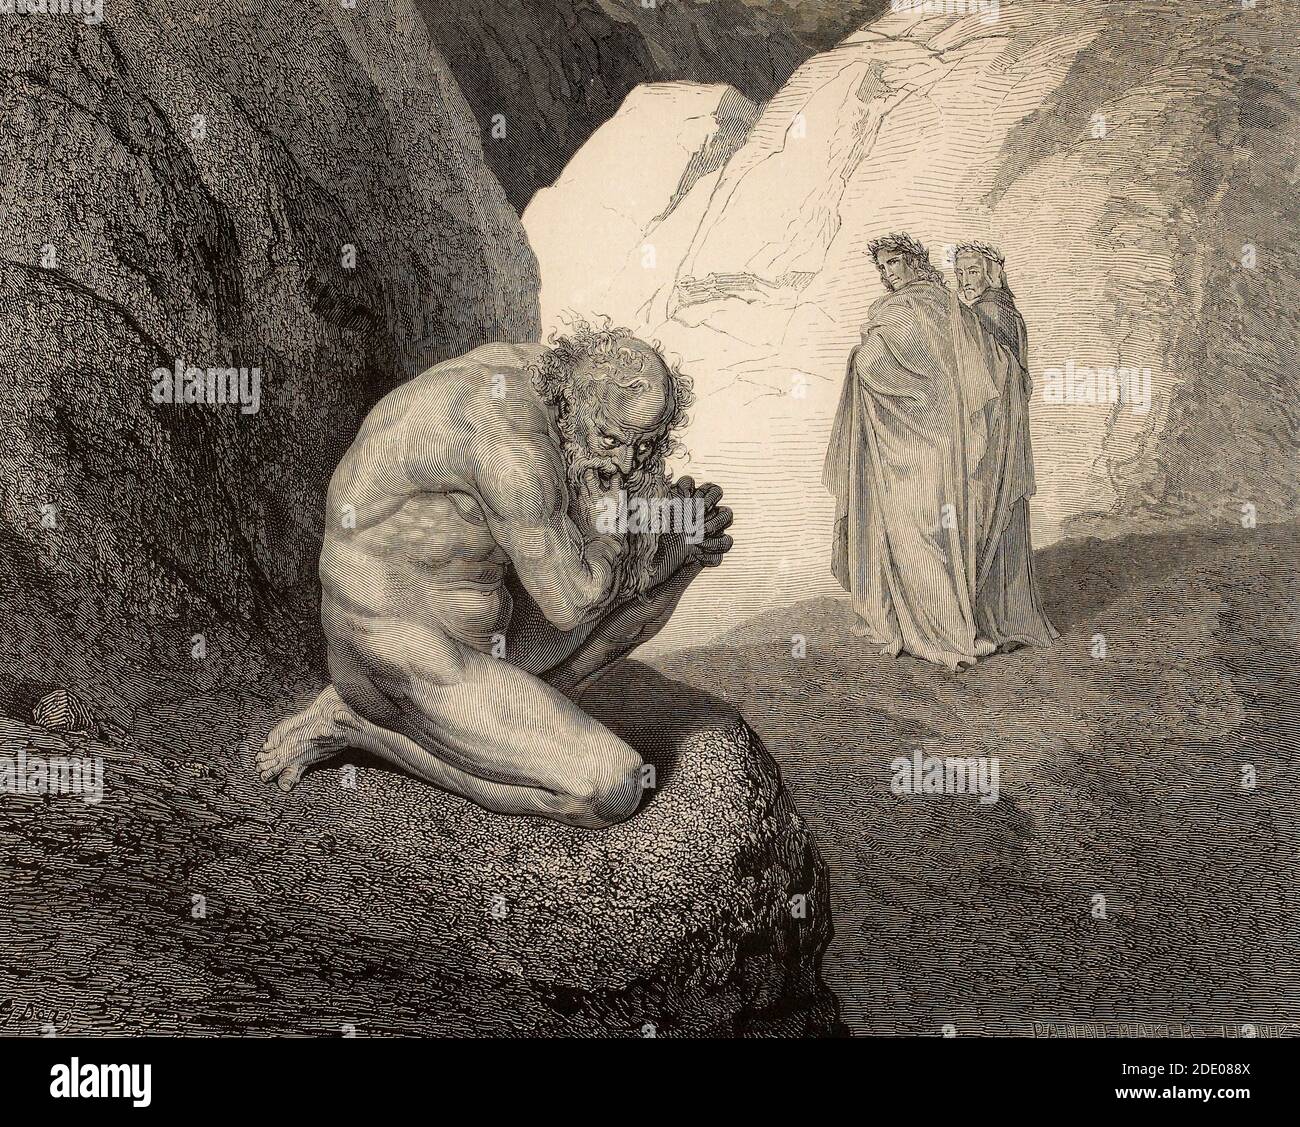 Dante Divina Commedia - Hölle - Dante und Virgil Dante und Virgil treffen Pluto im fünften Kreis des gierigen, verlorenen, wütenden und faulen Canto VII - Illustration von Gustave Dorè Stockfoto